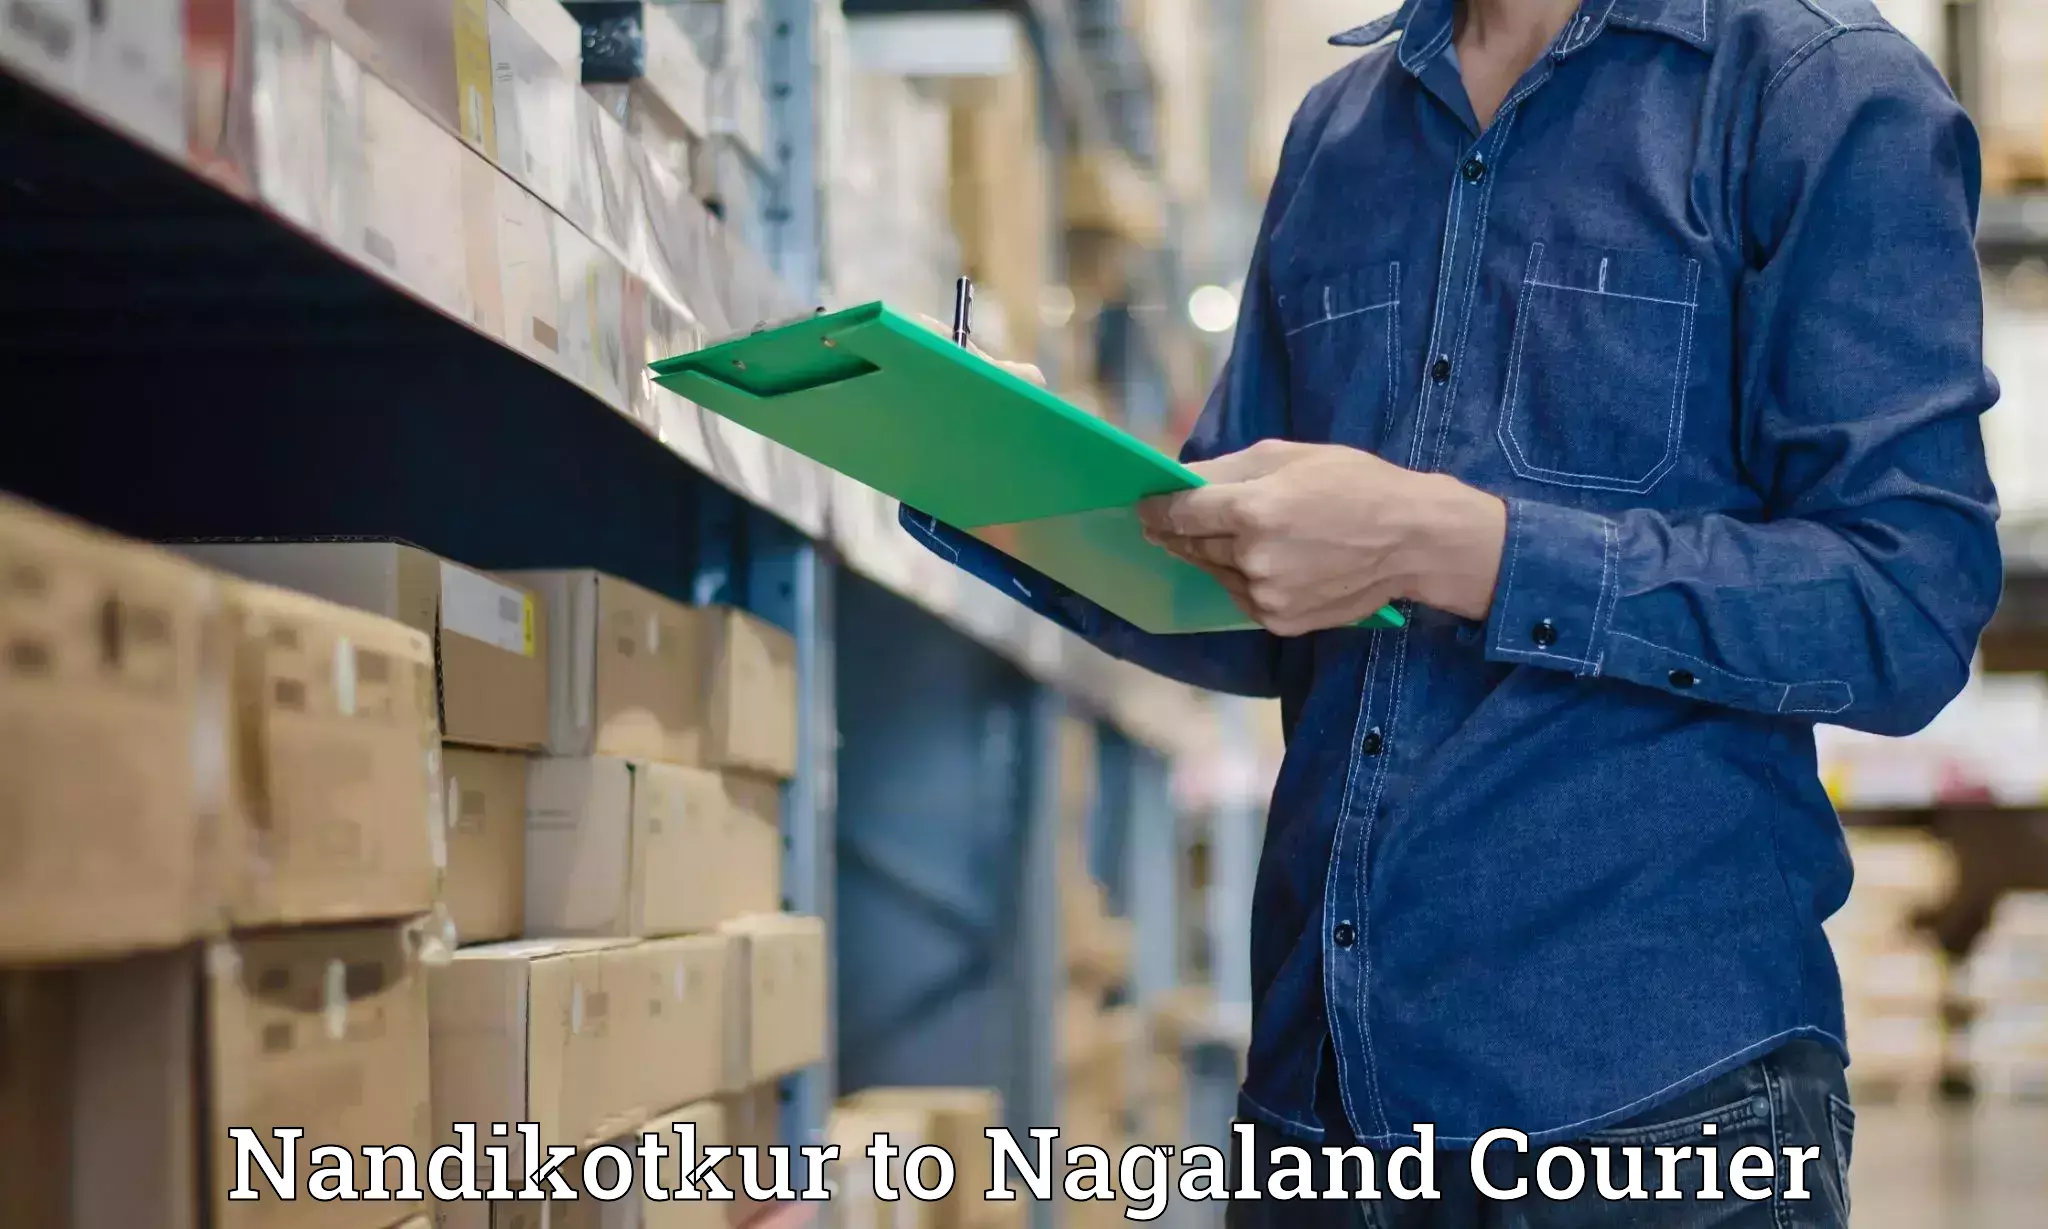 Nationwide delivery network Nandikotkur to Nagaland